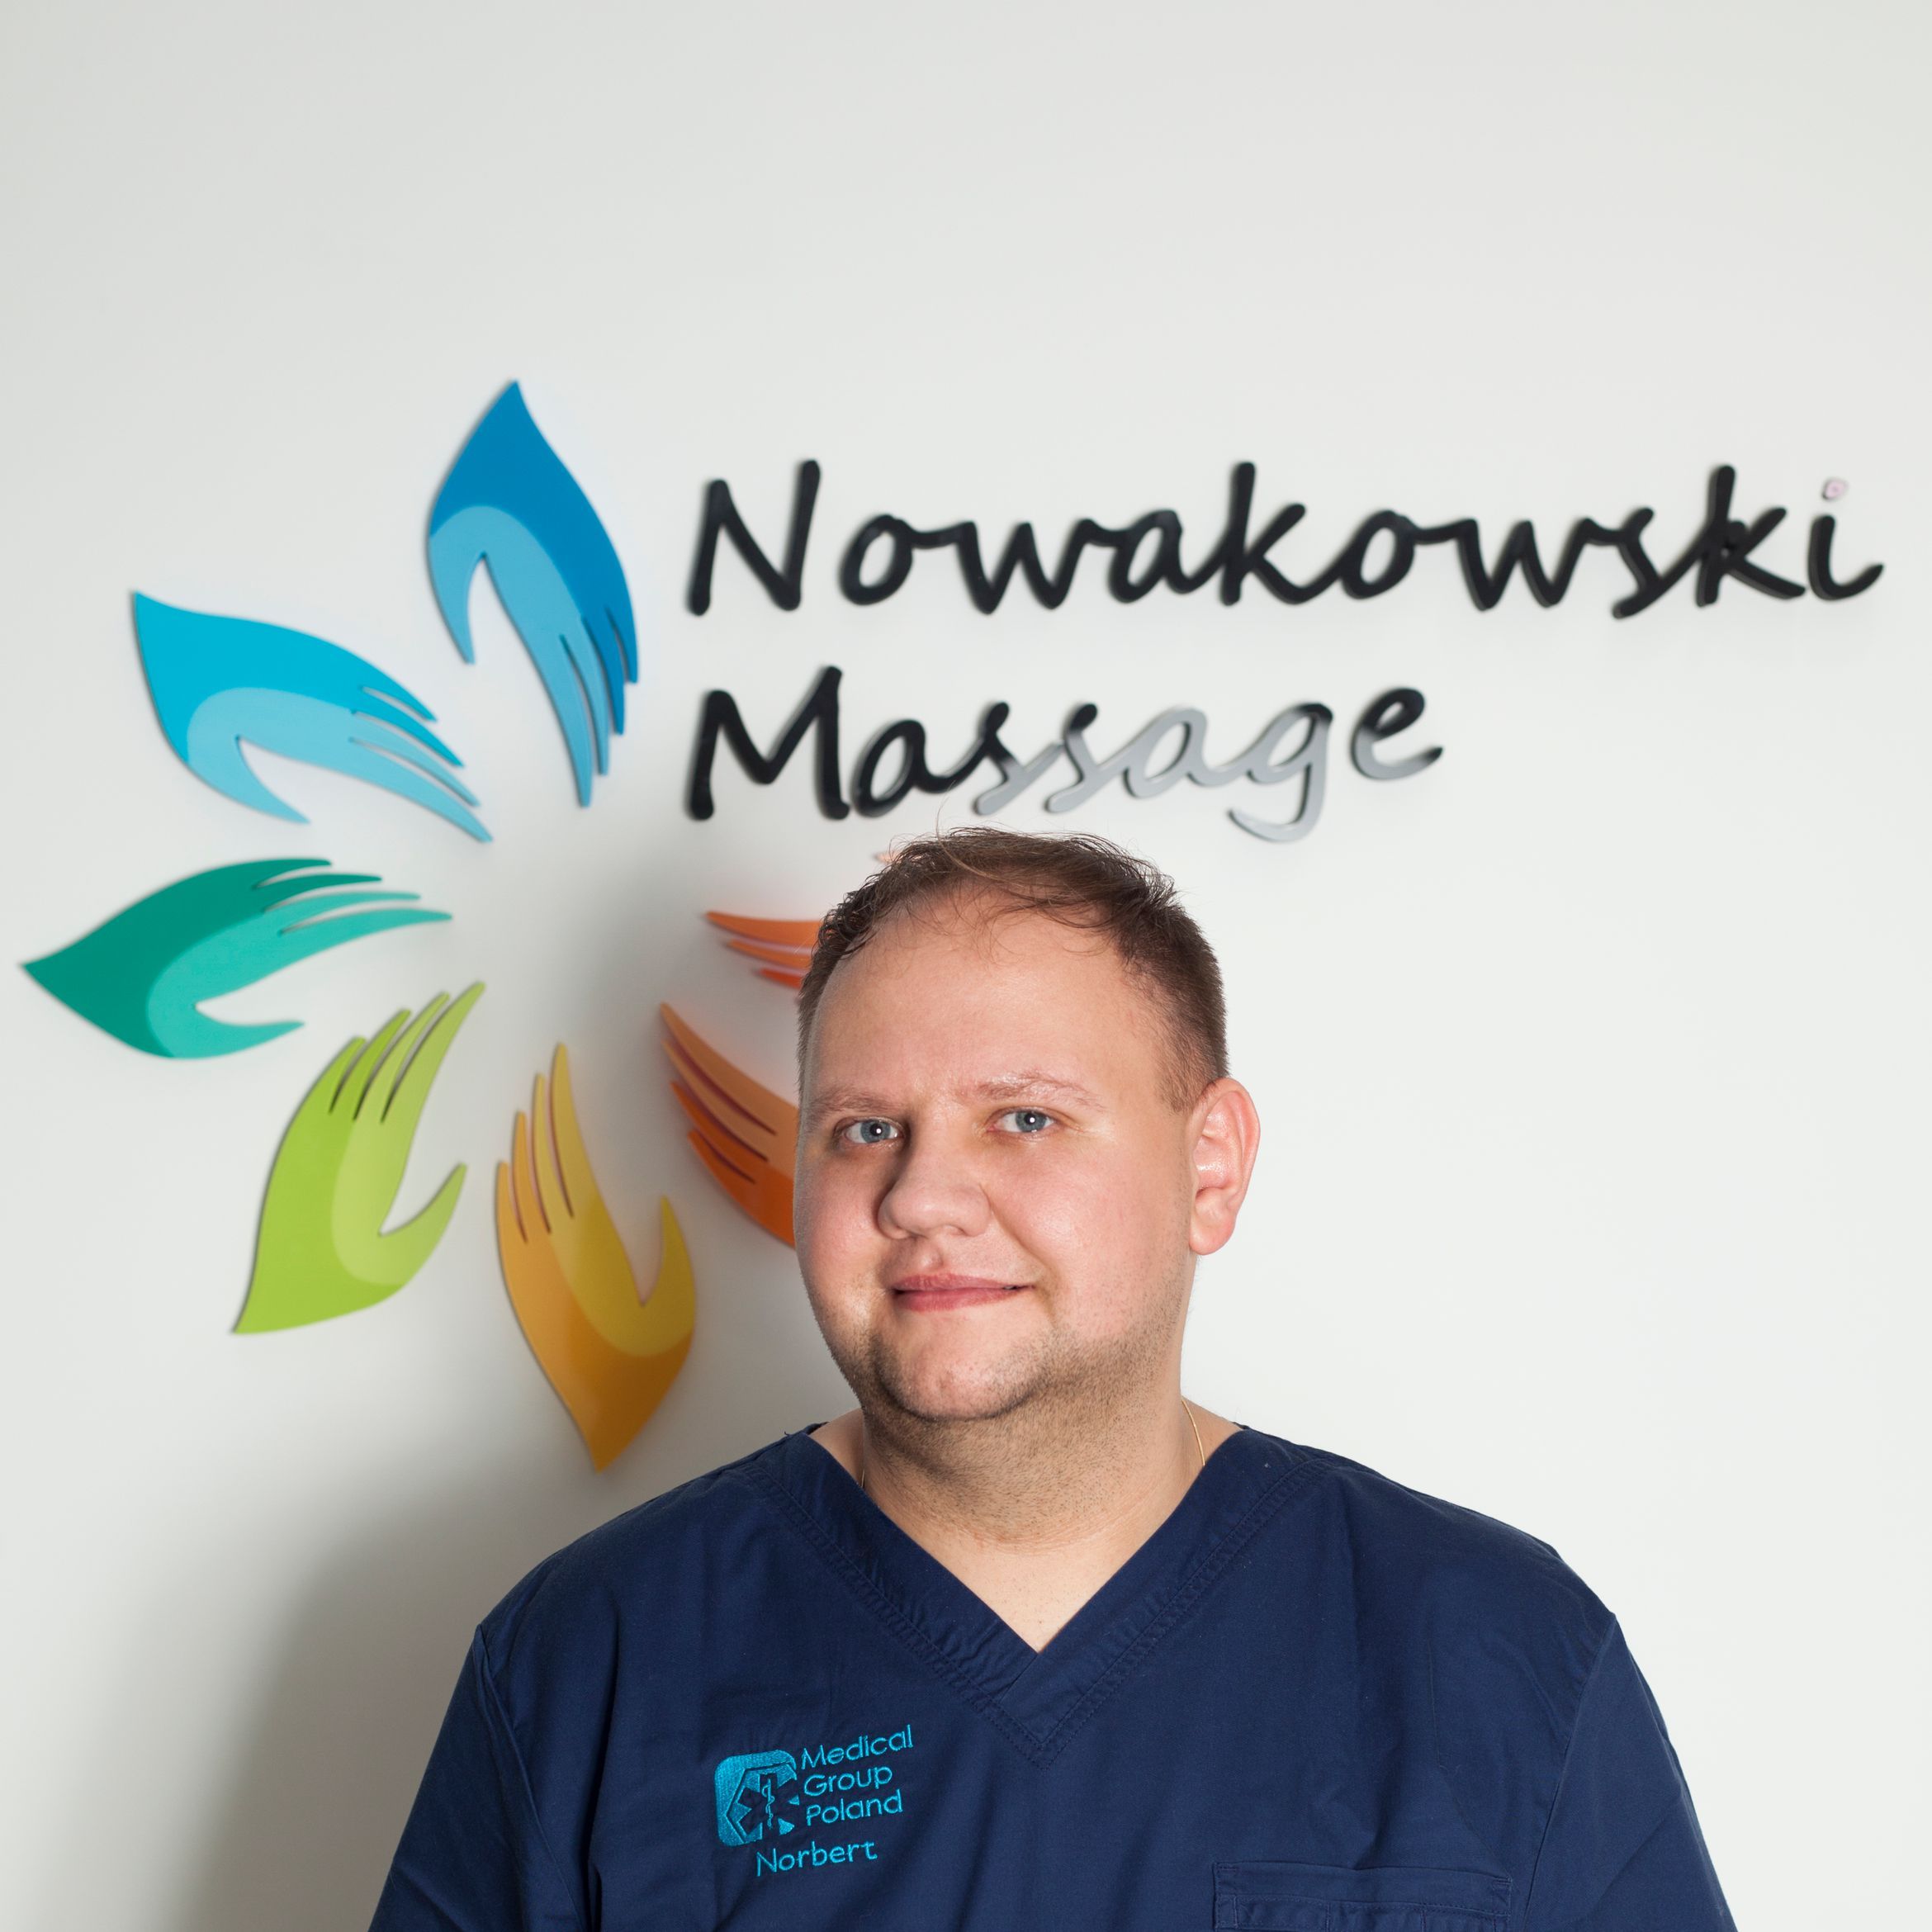 Norbert Nowakowski - Massagenowakowski